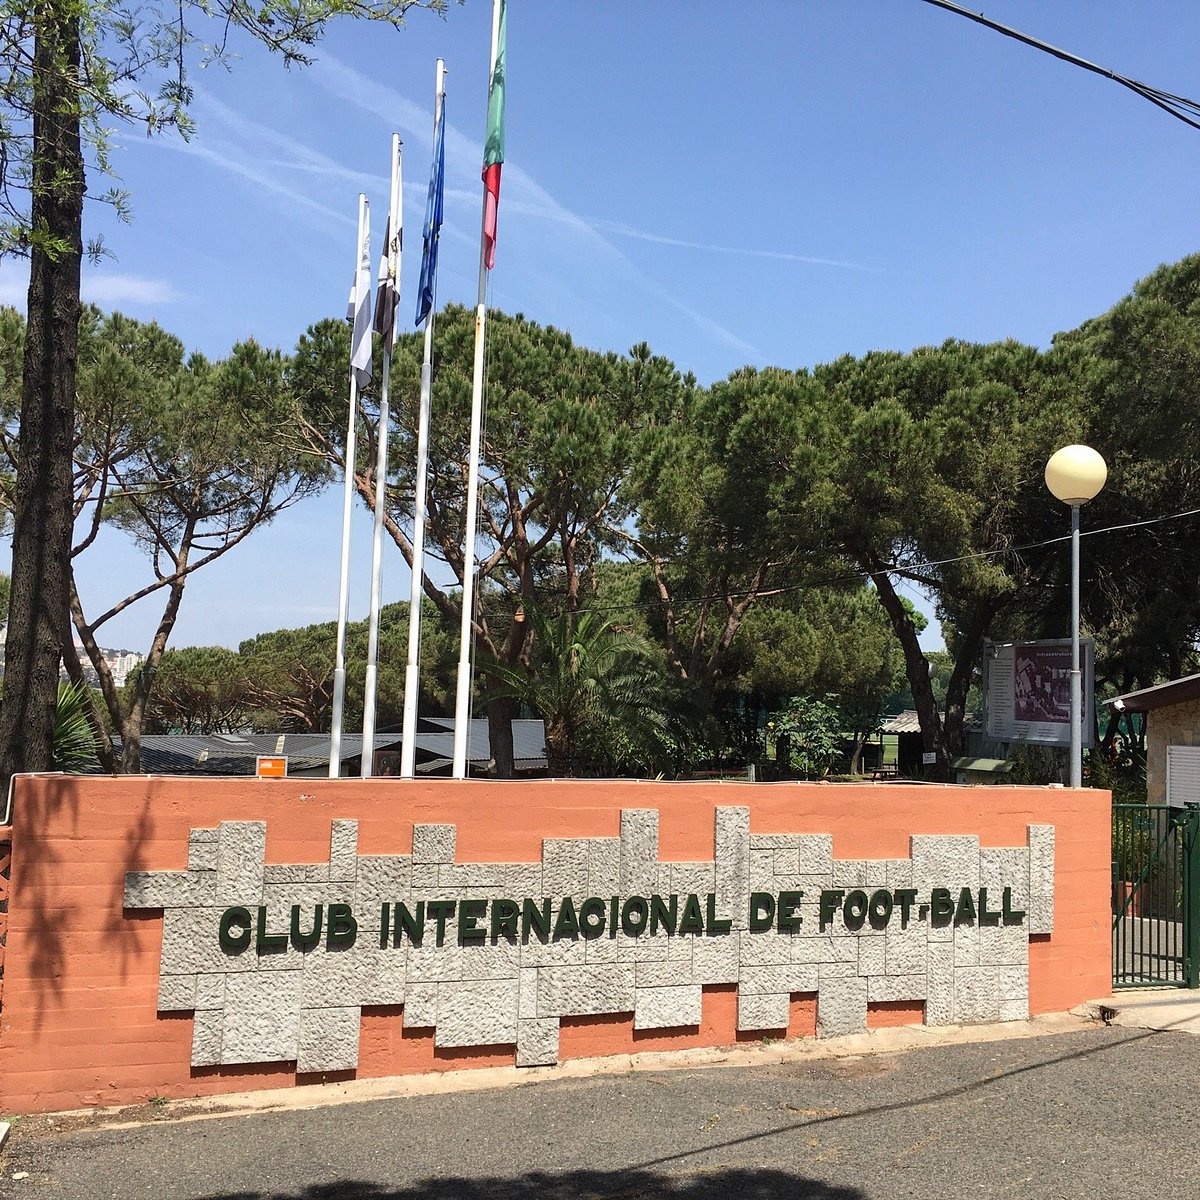 CIF: Ténis, Futebol, Padel no Clube Internacional de Foot-Ball.